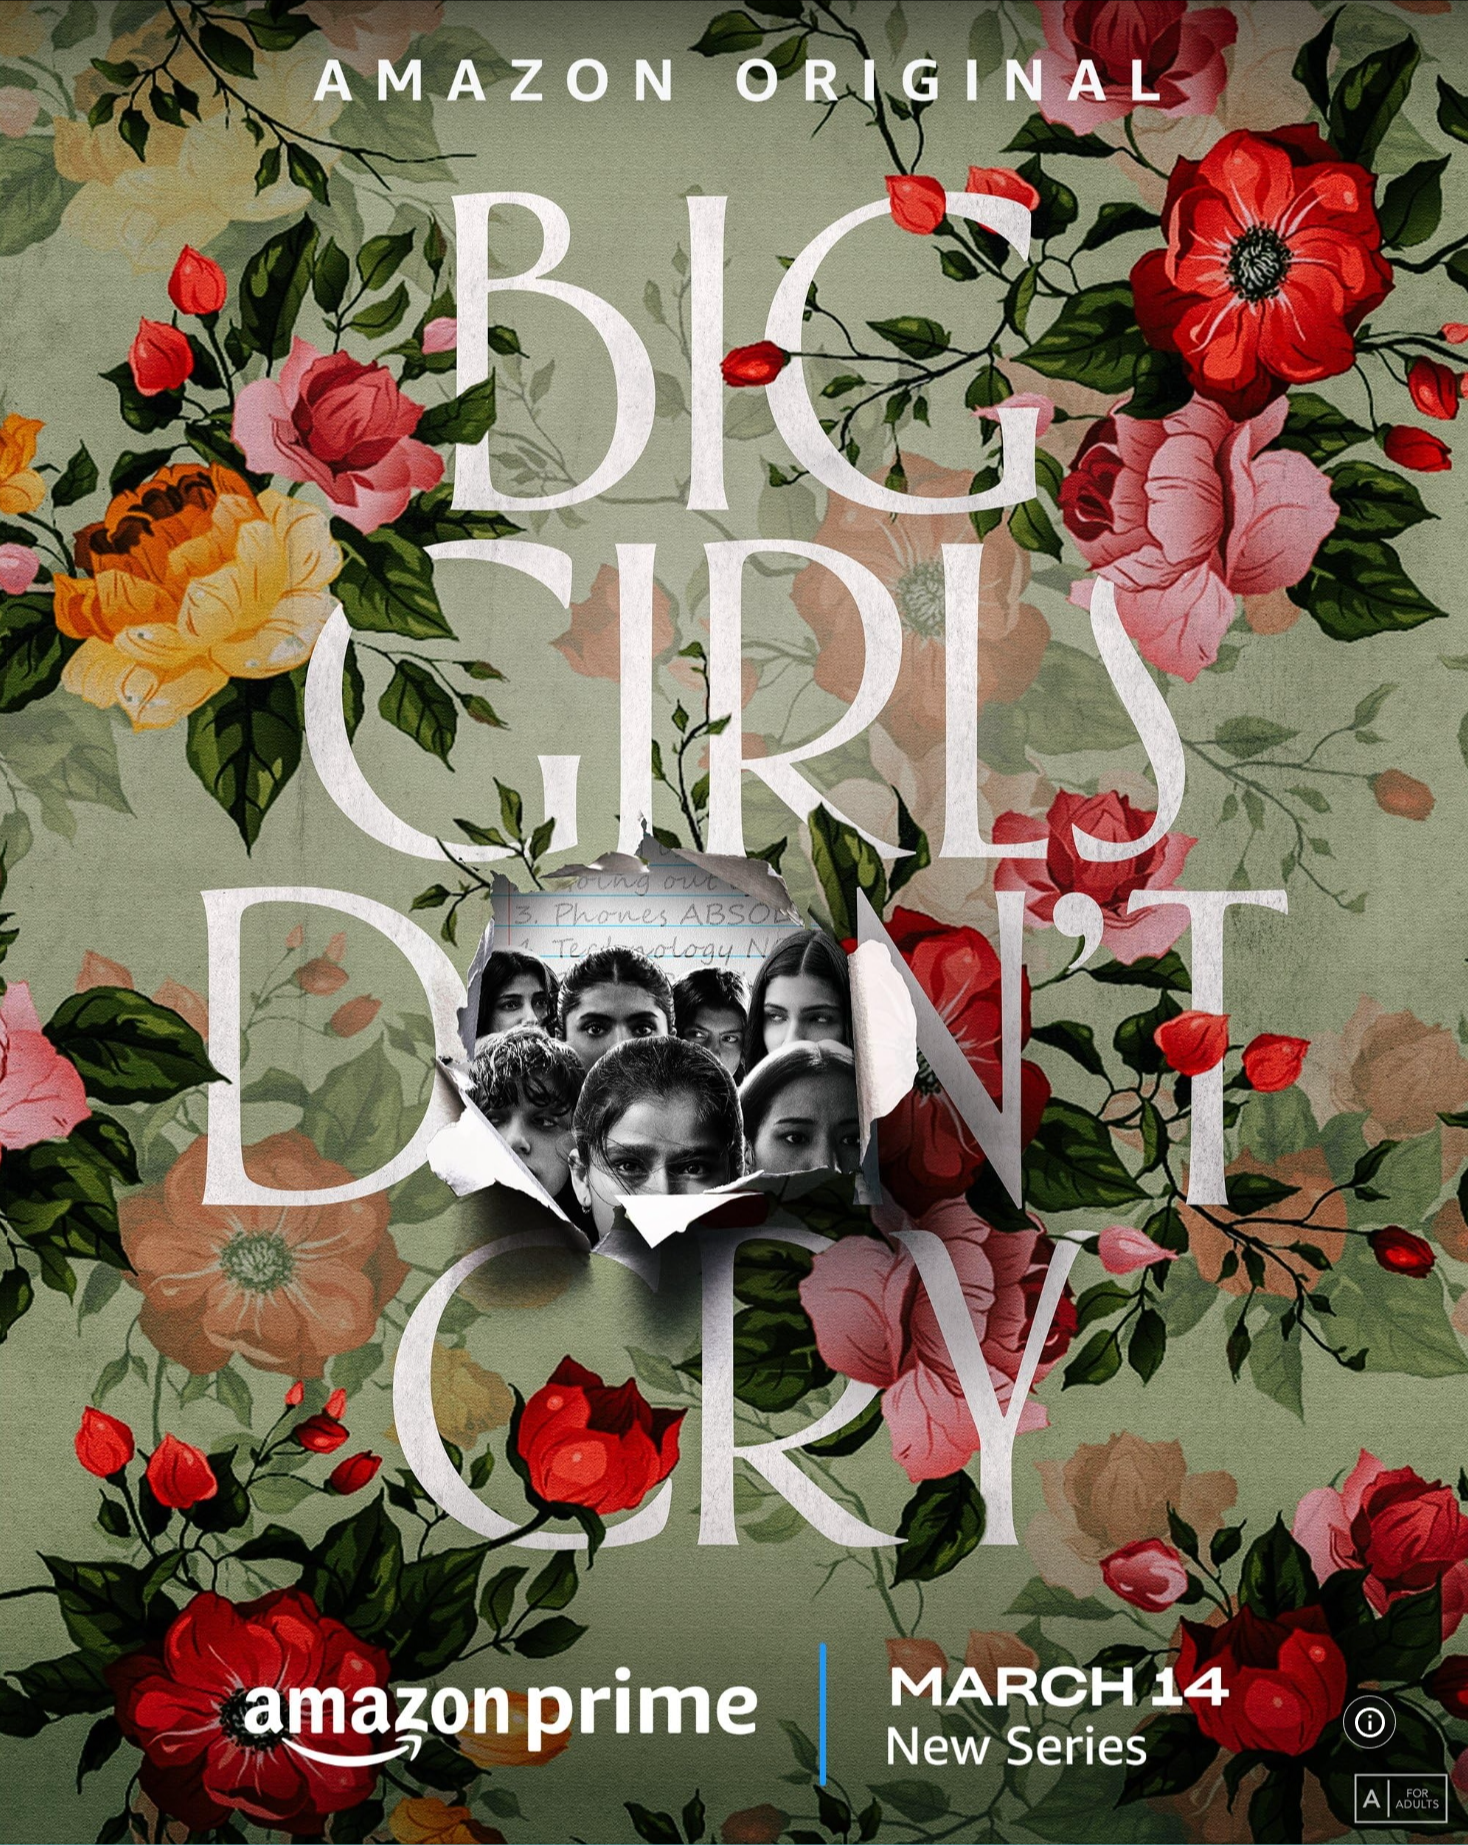 Big Girls Don't Cry (BGDC) -โตแล้วไม่ร้องไห้ 1-7 จบบรรยายไทย